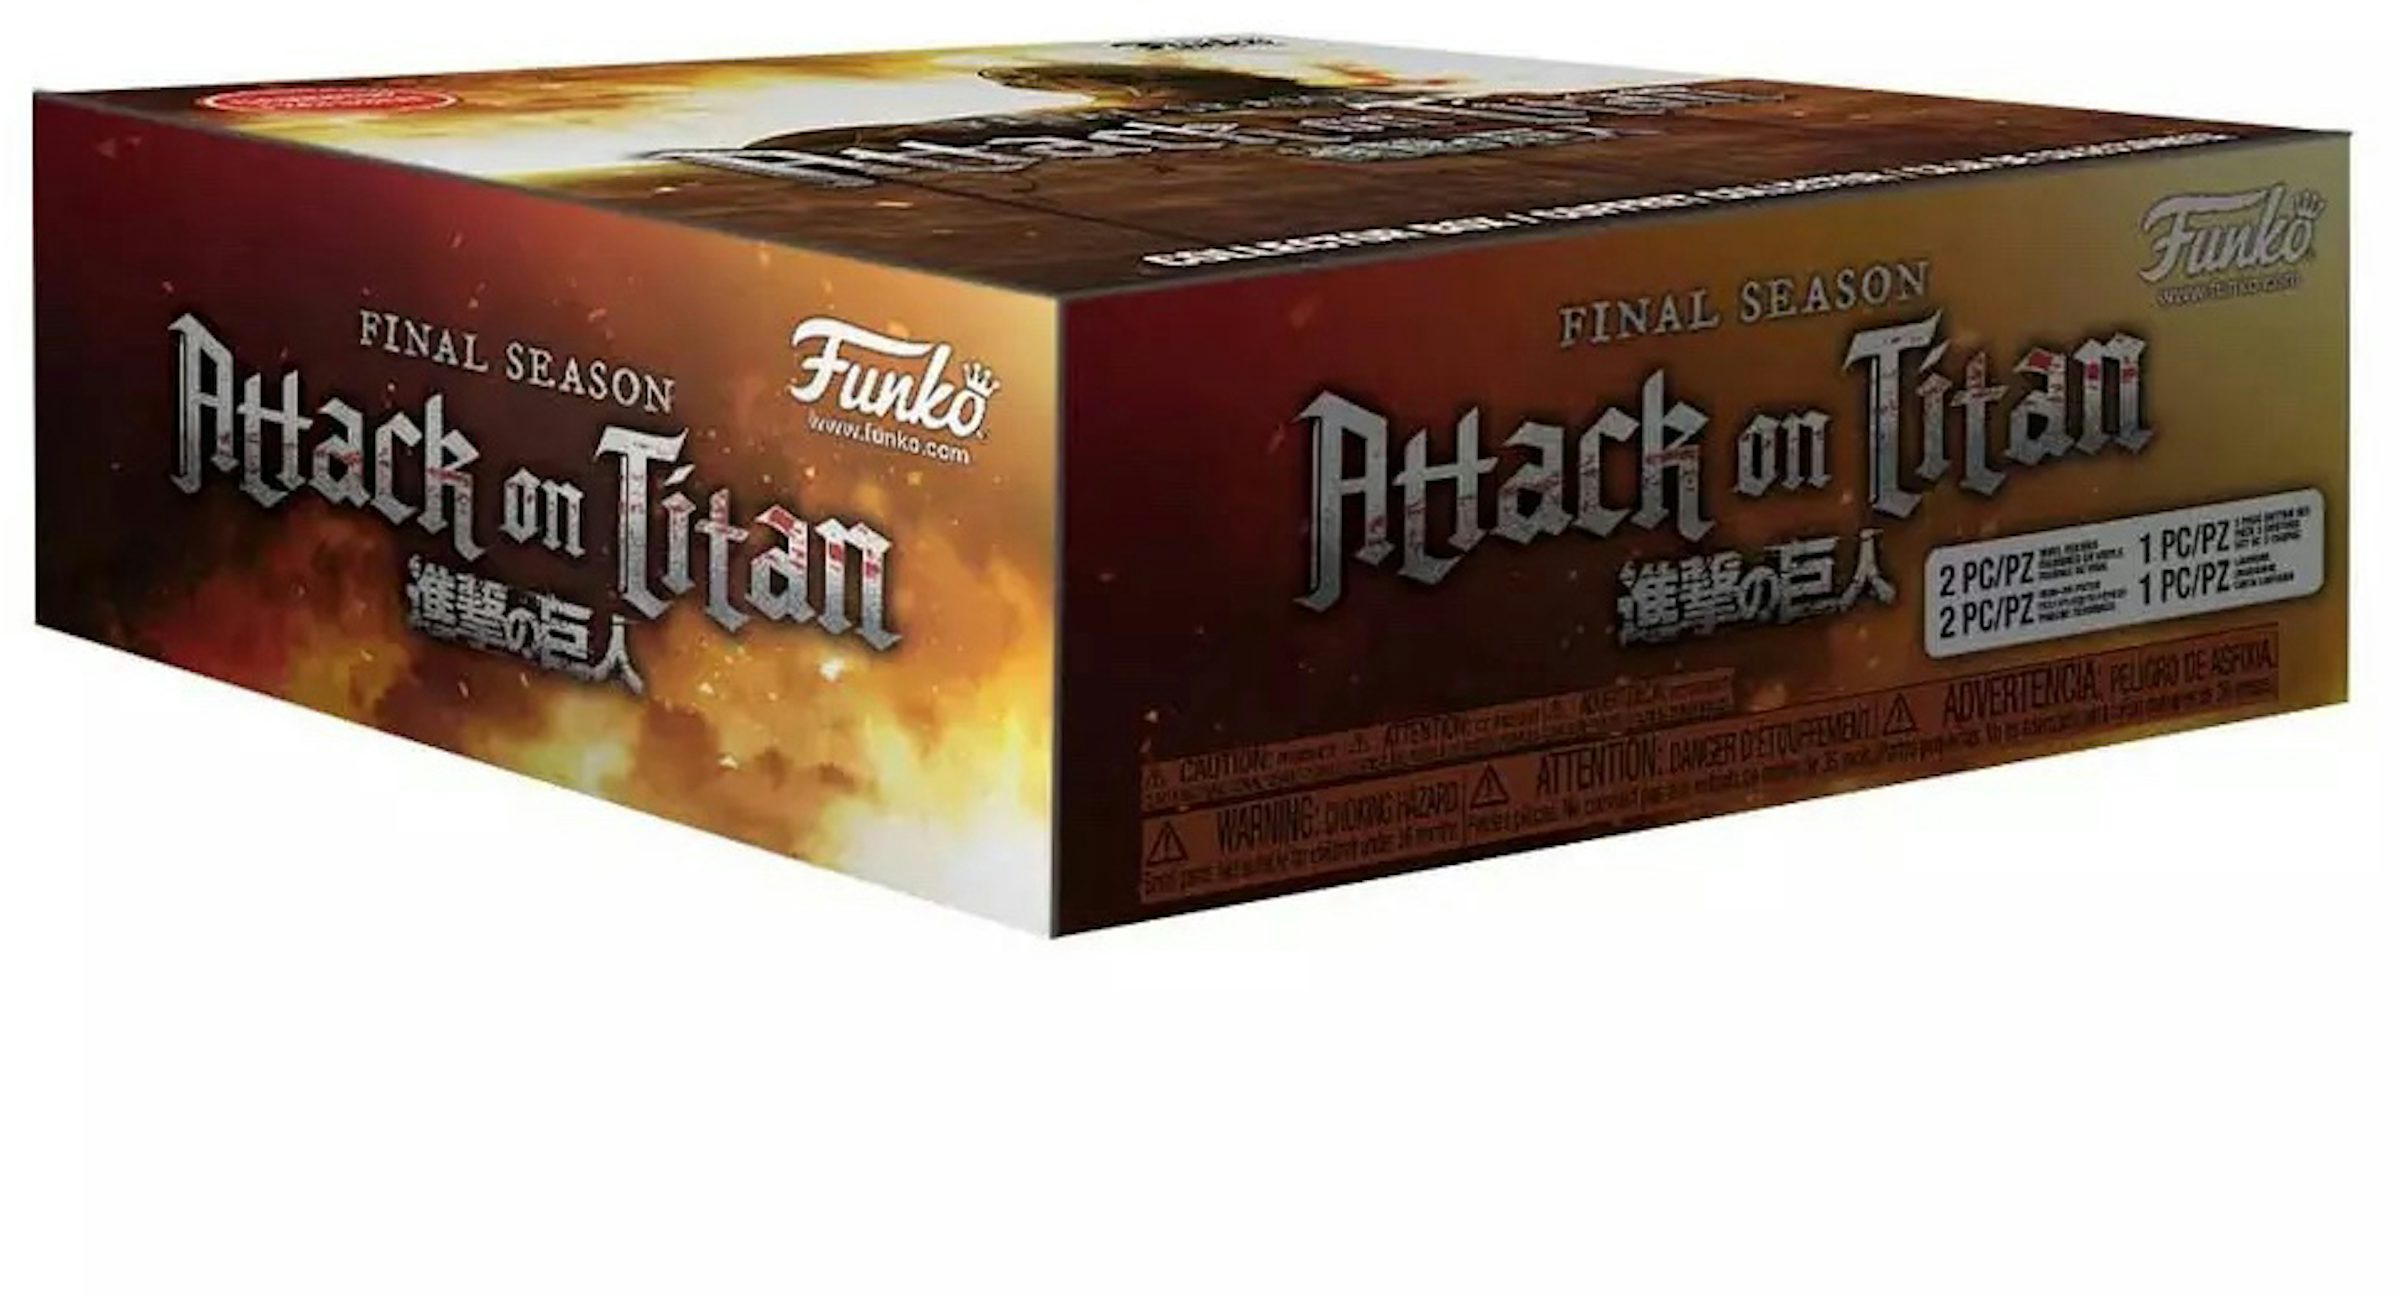 Funko Box: Attack on Titan: Final Season Collector's Box GameStop